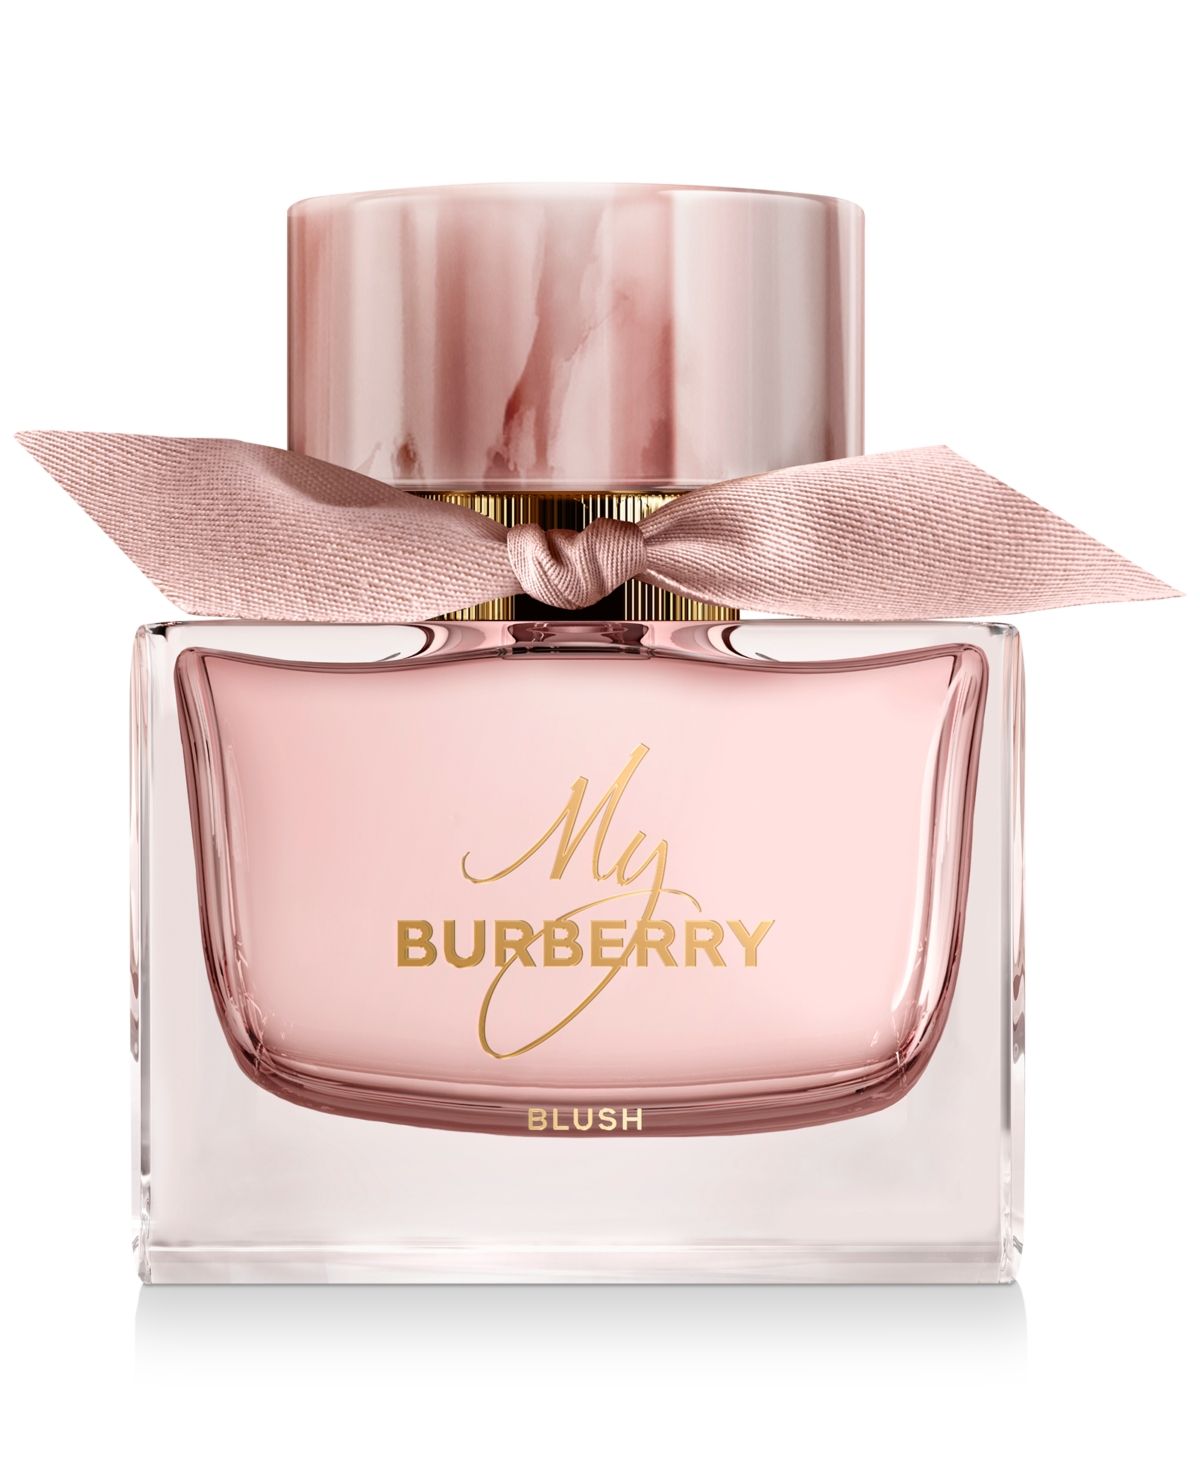 Burberry My Burberry Blush Eau de Parfum Spray, 3-oz. | Macys (US)